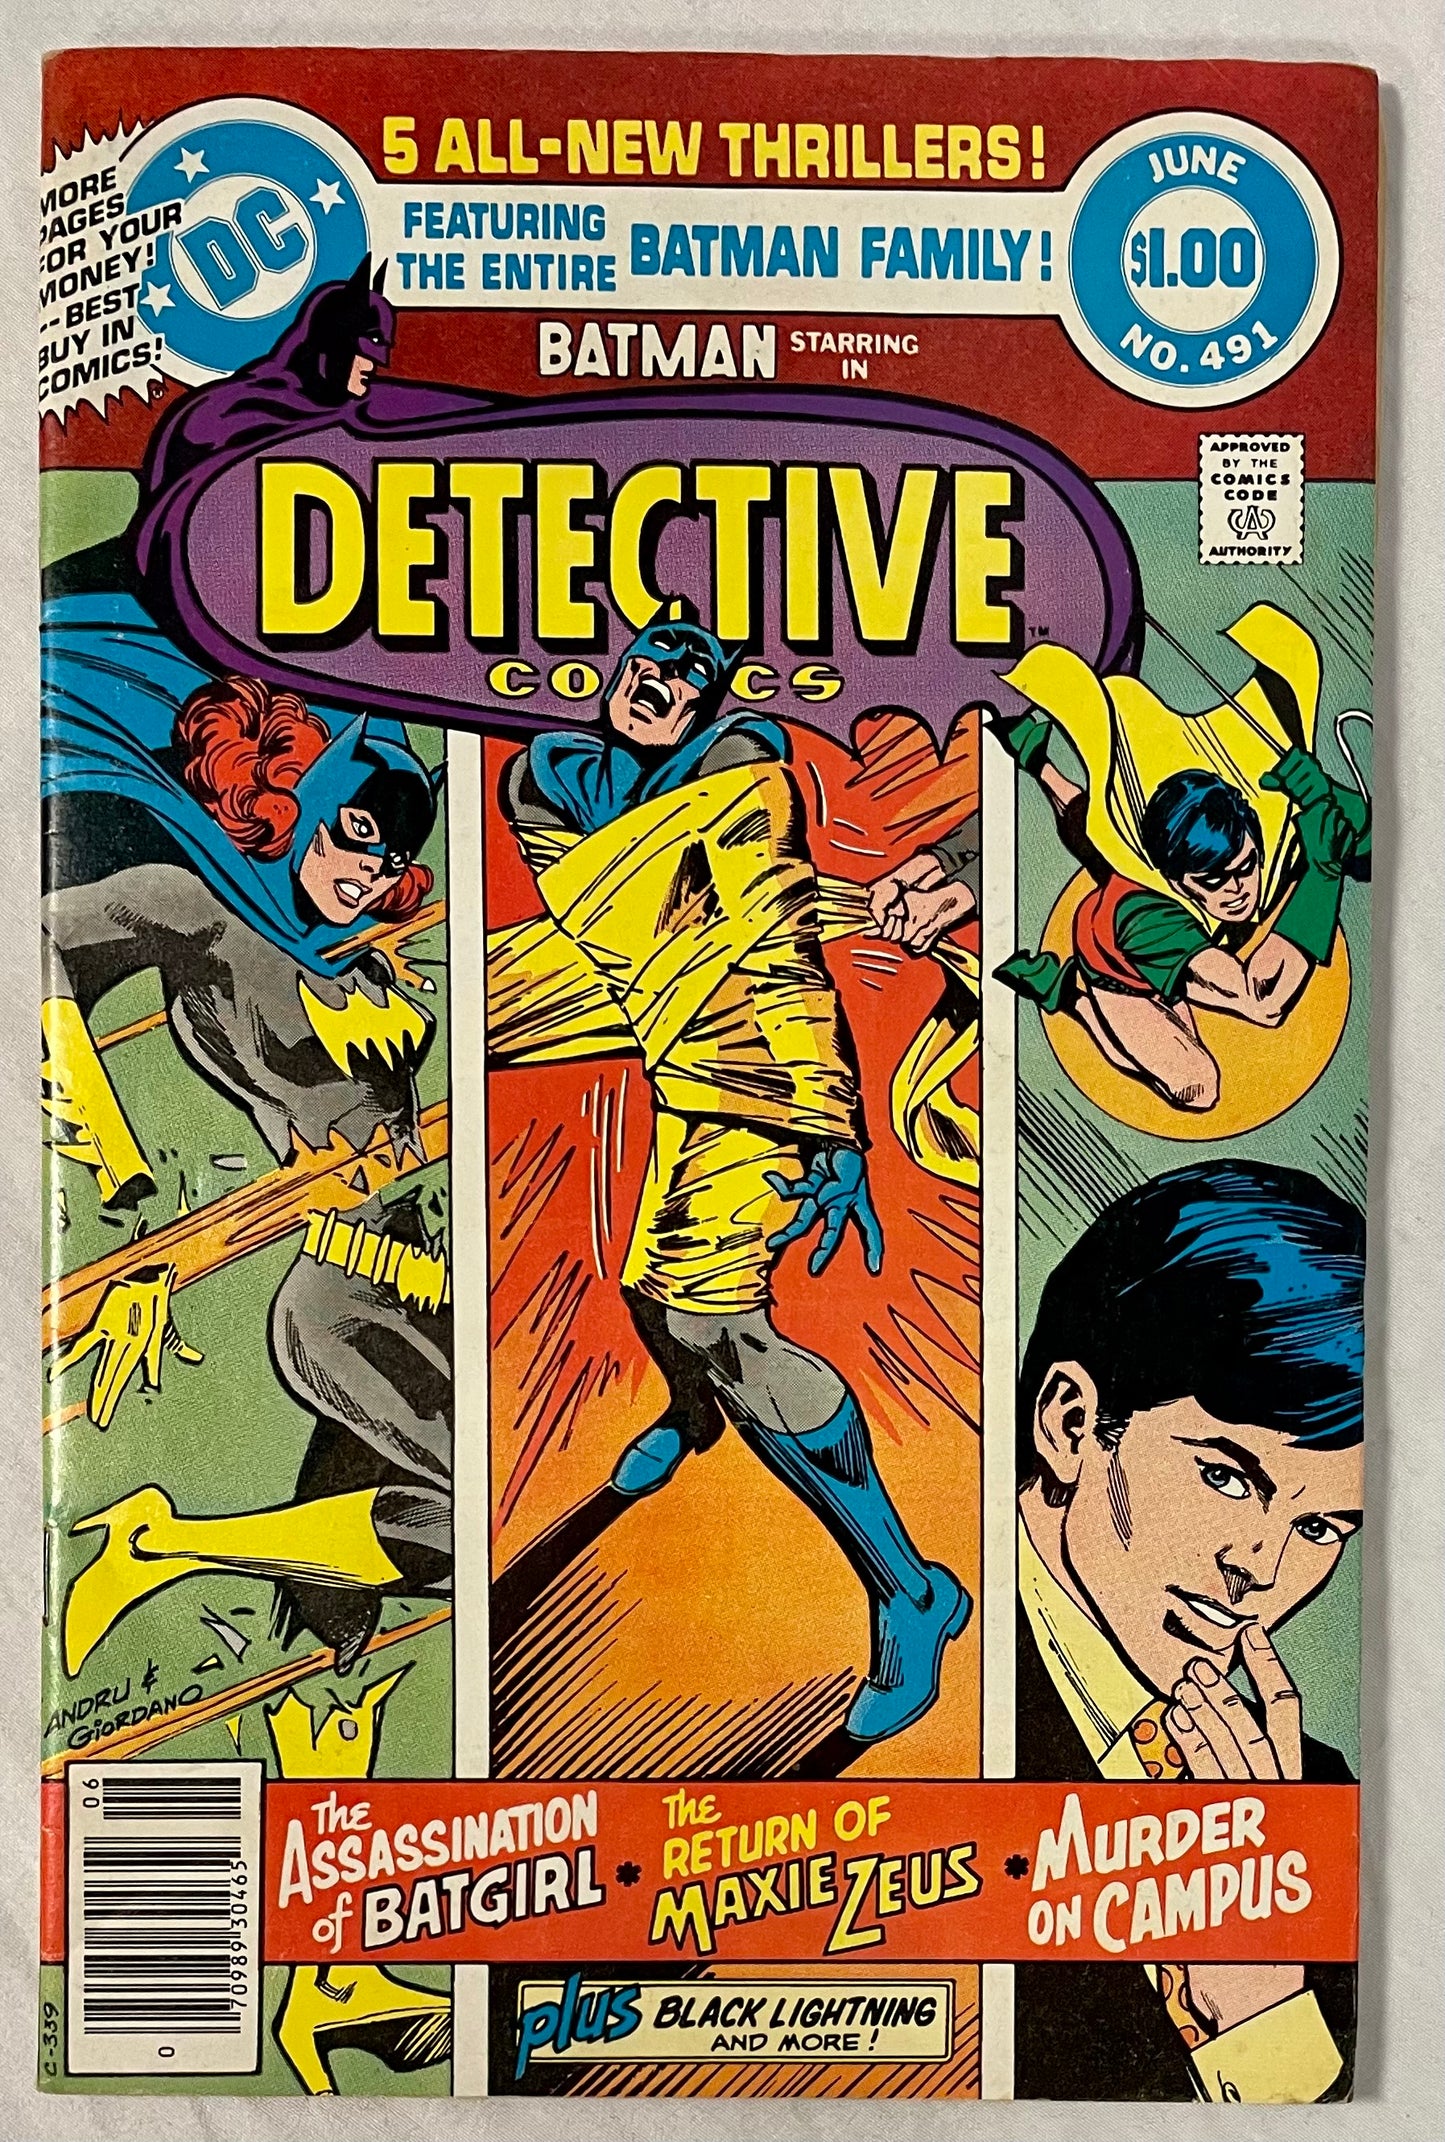 DC Comics Detective Comics No. 491